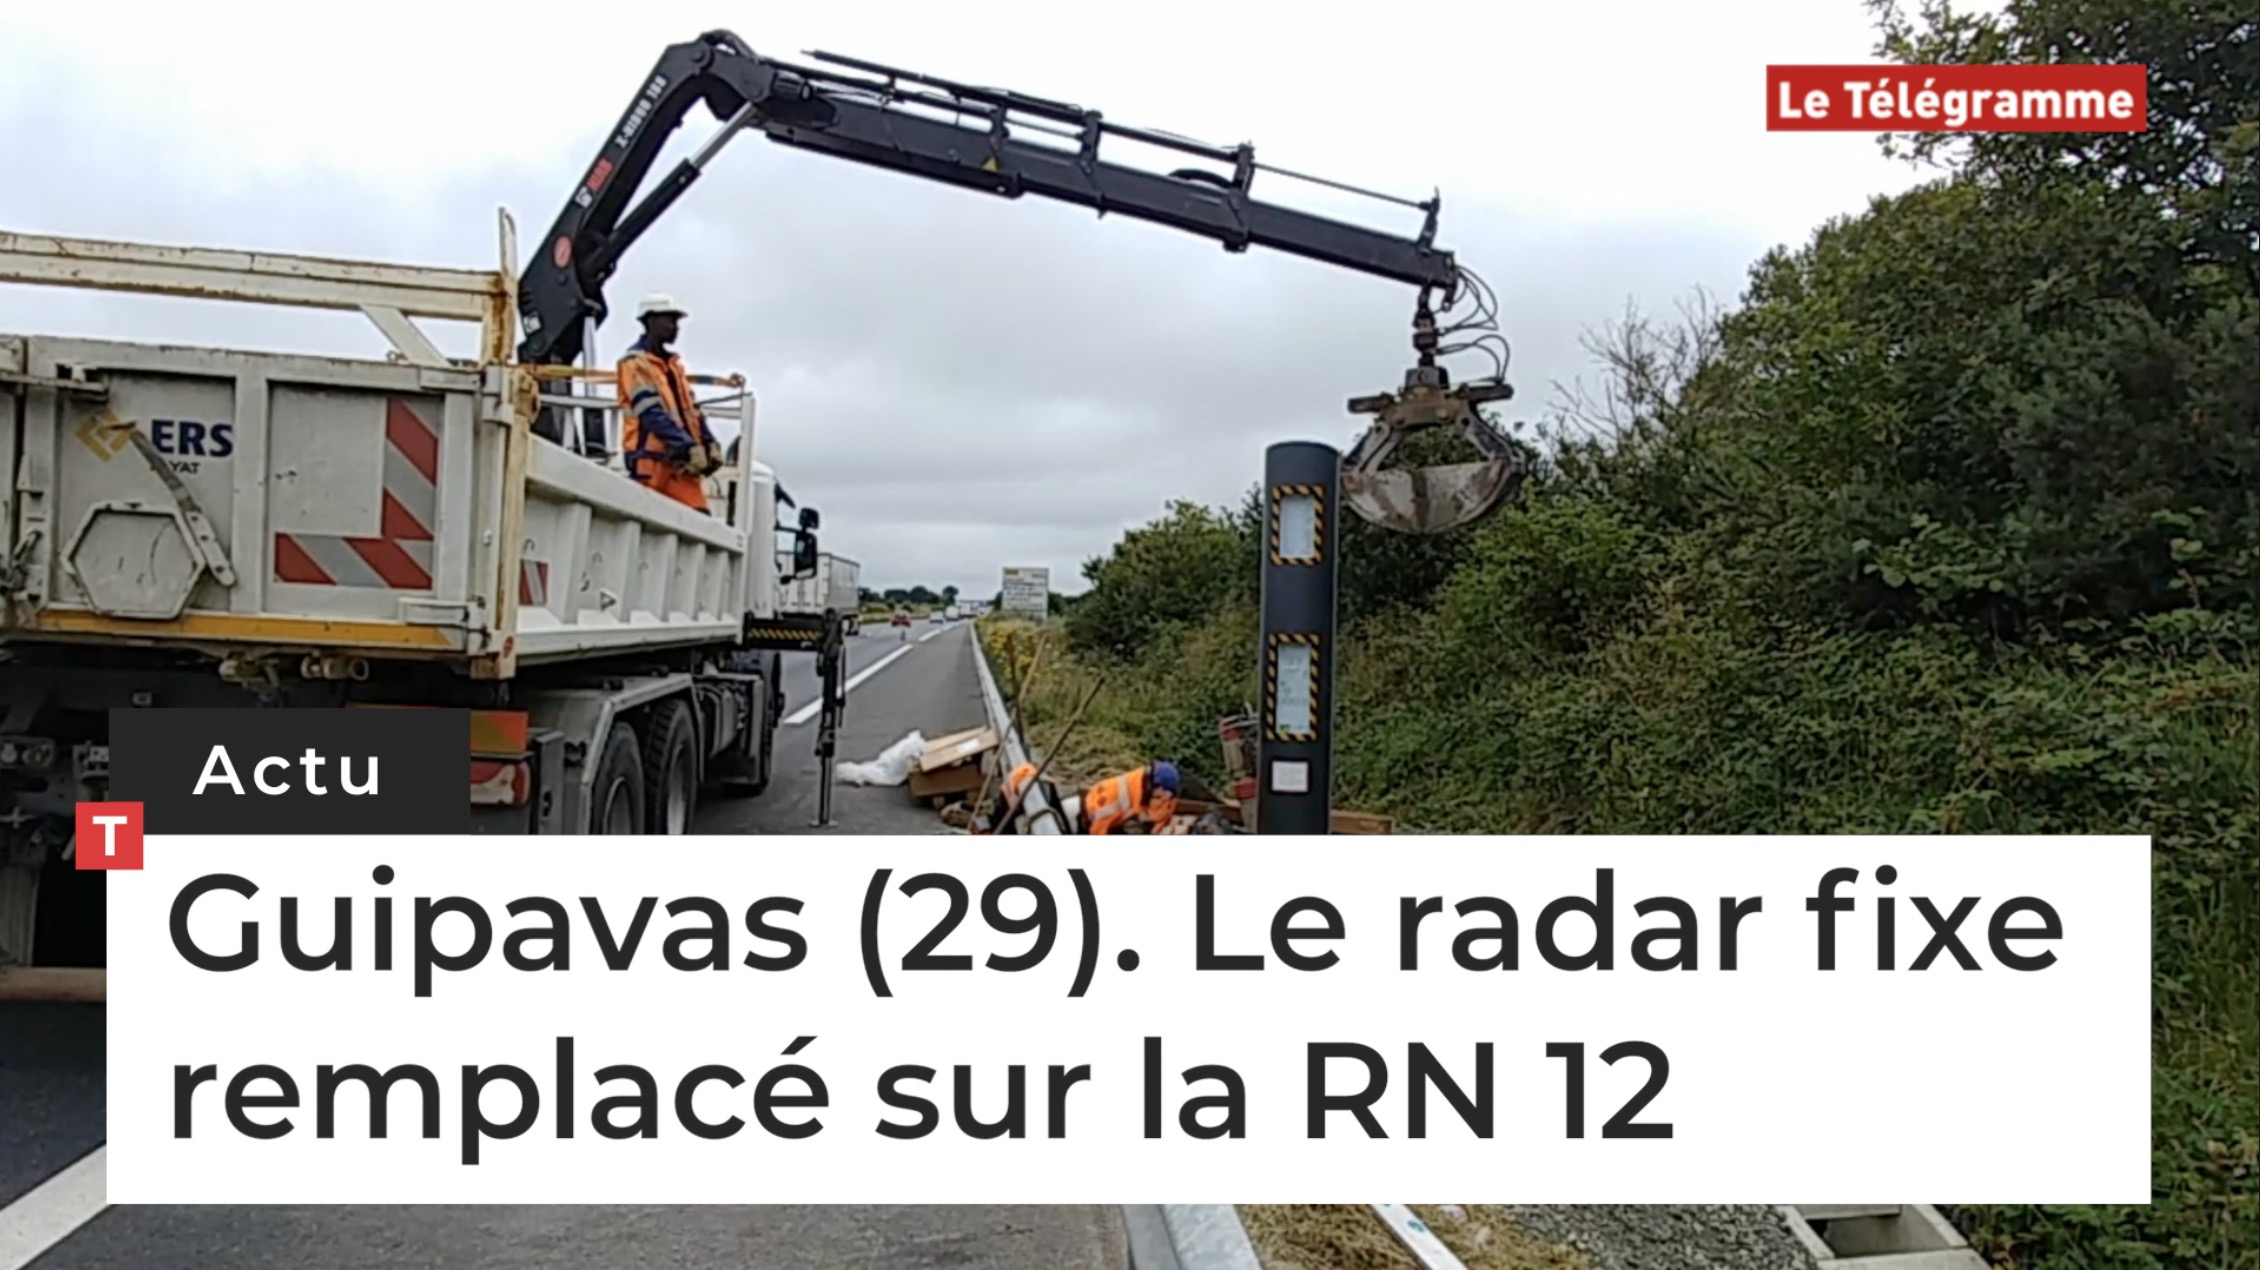 Guipavas (29). Le radar fixe remplacé sur la RN 12 (Le Télégramme)